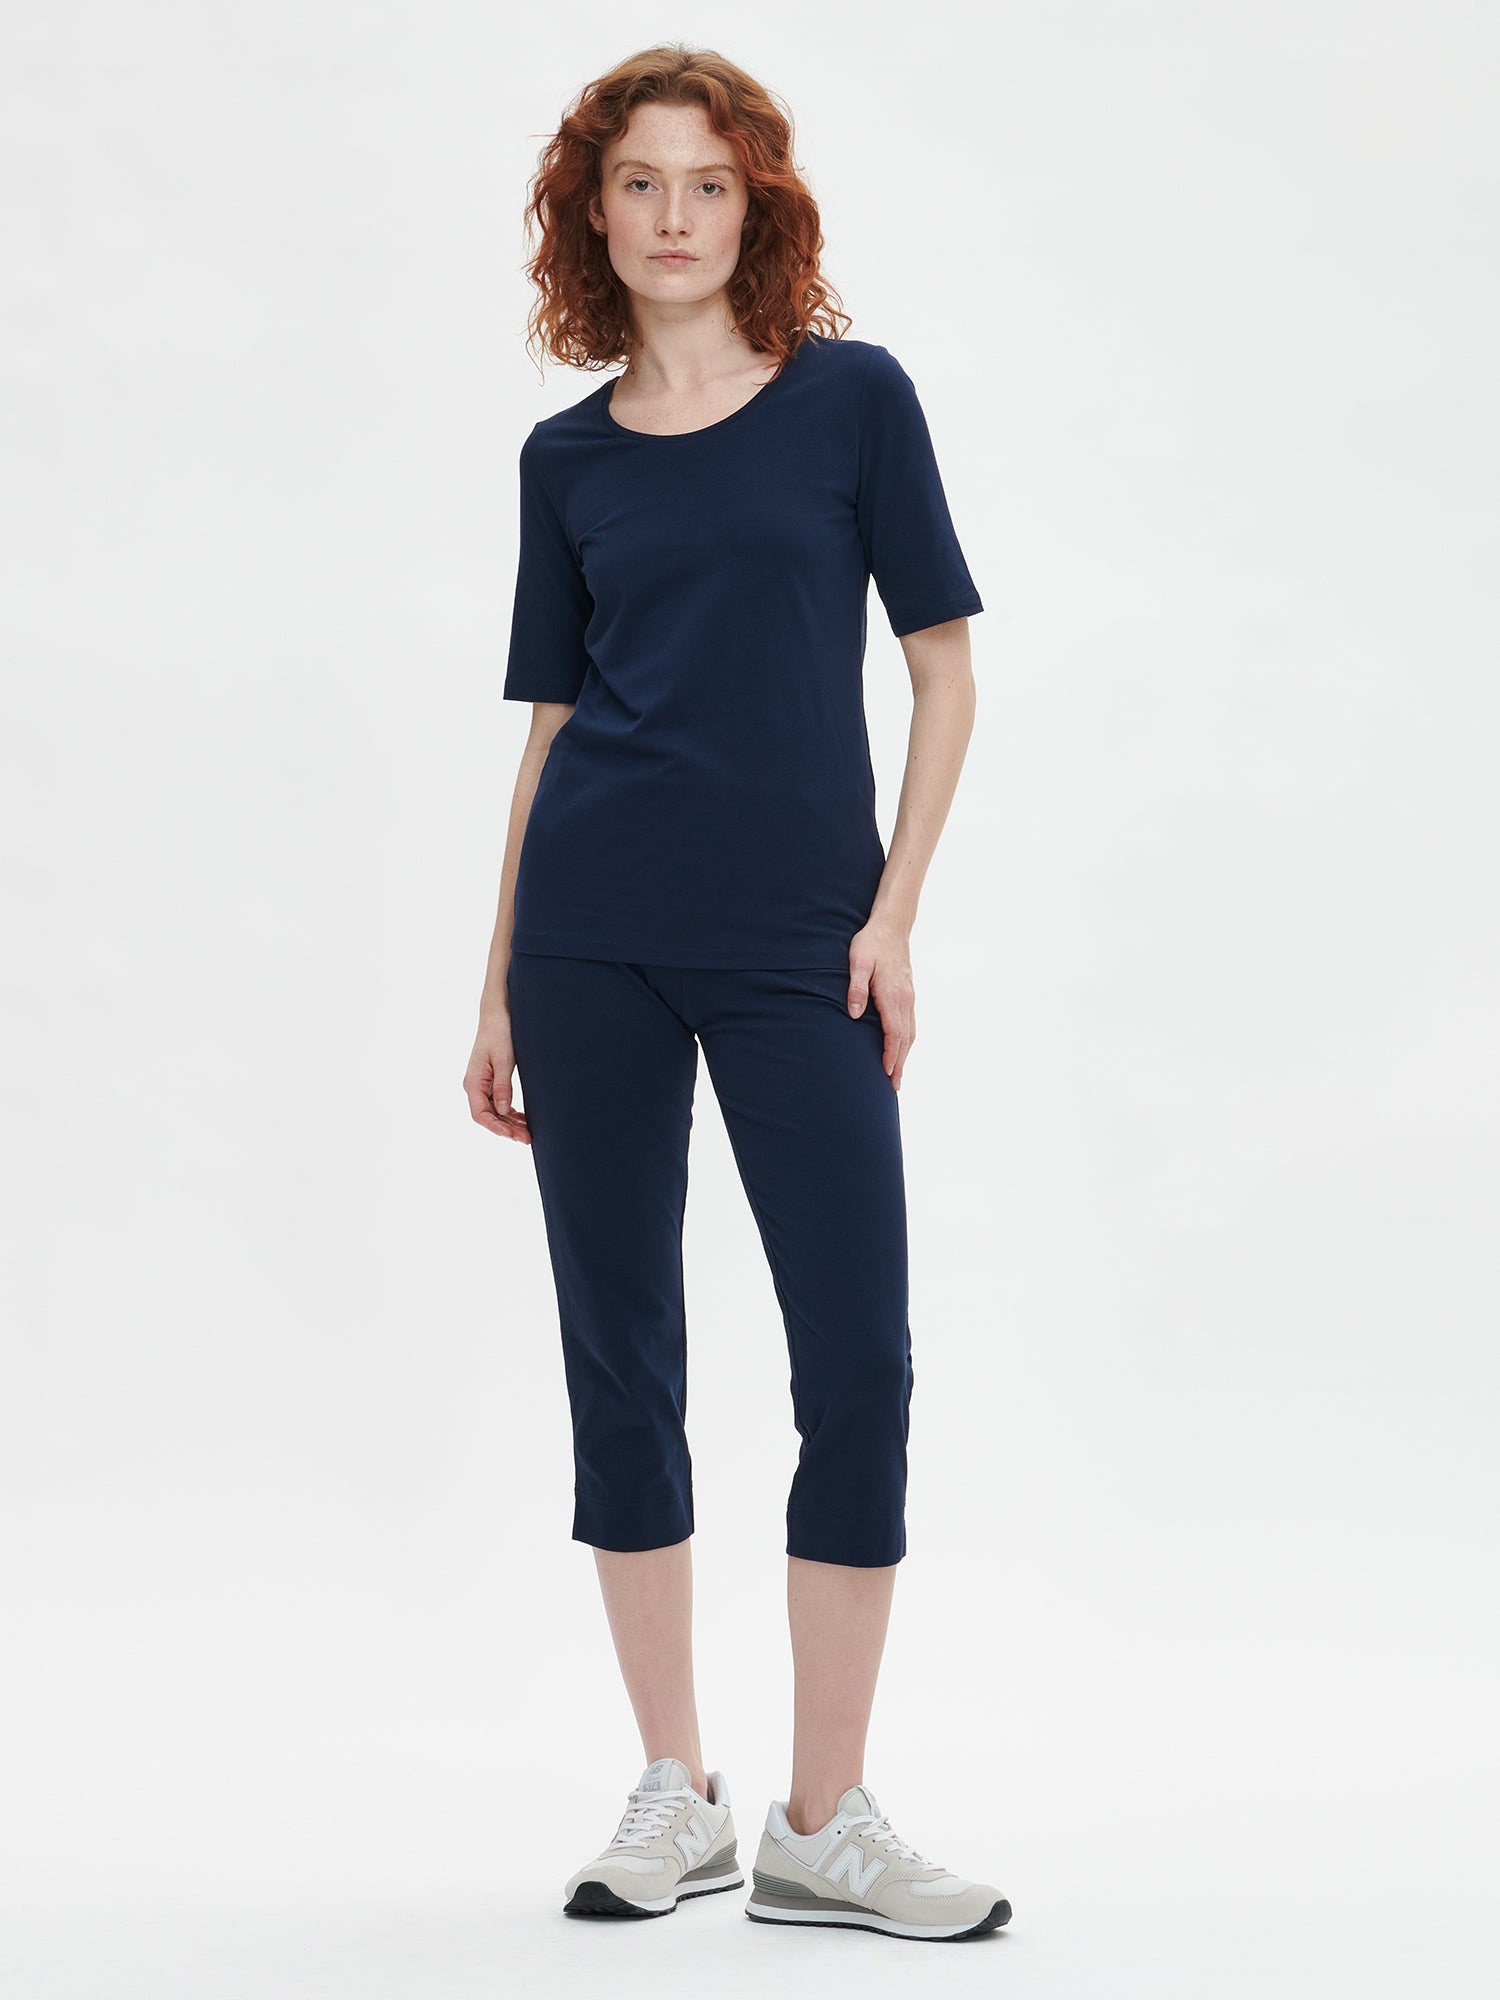 Naisten klassisen tyylikäs tummansininen Basic t-paita pyöreällä pääntiellä mallin päällä.